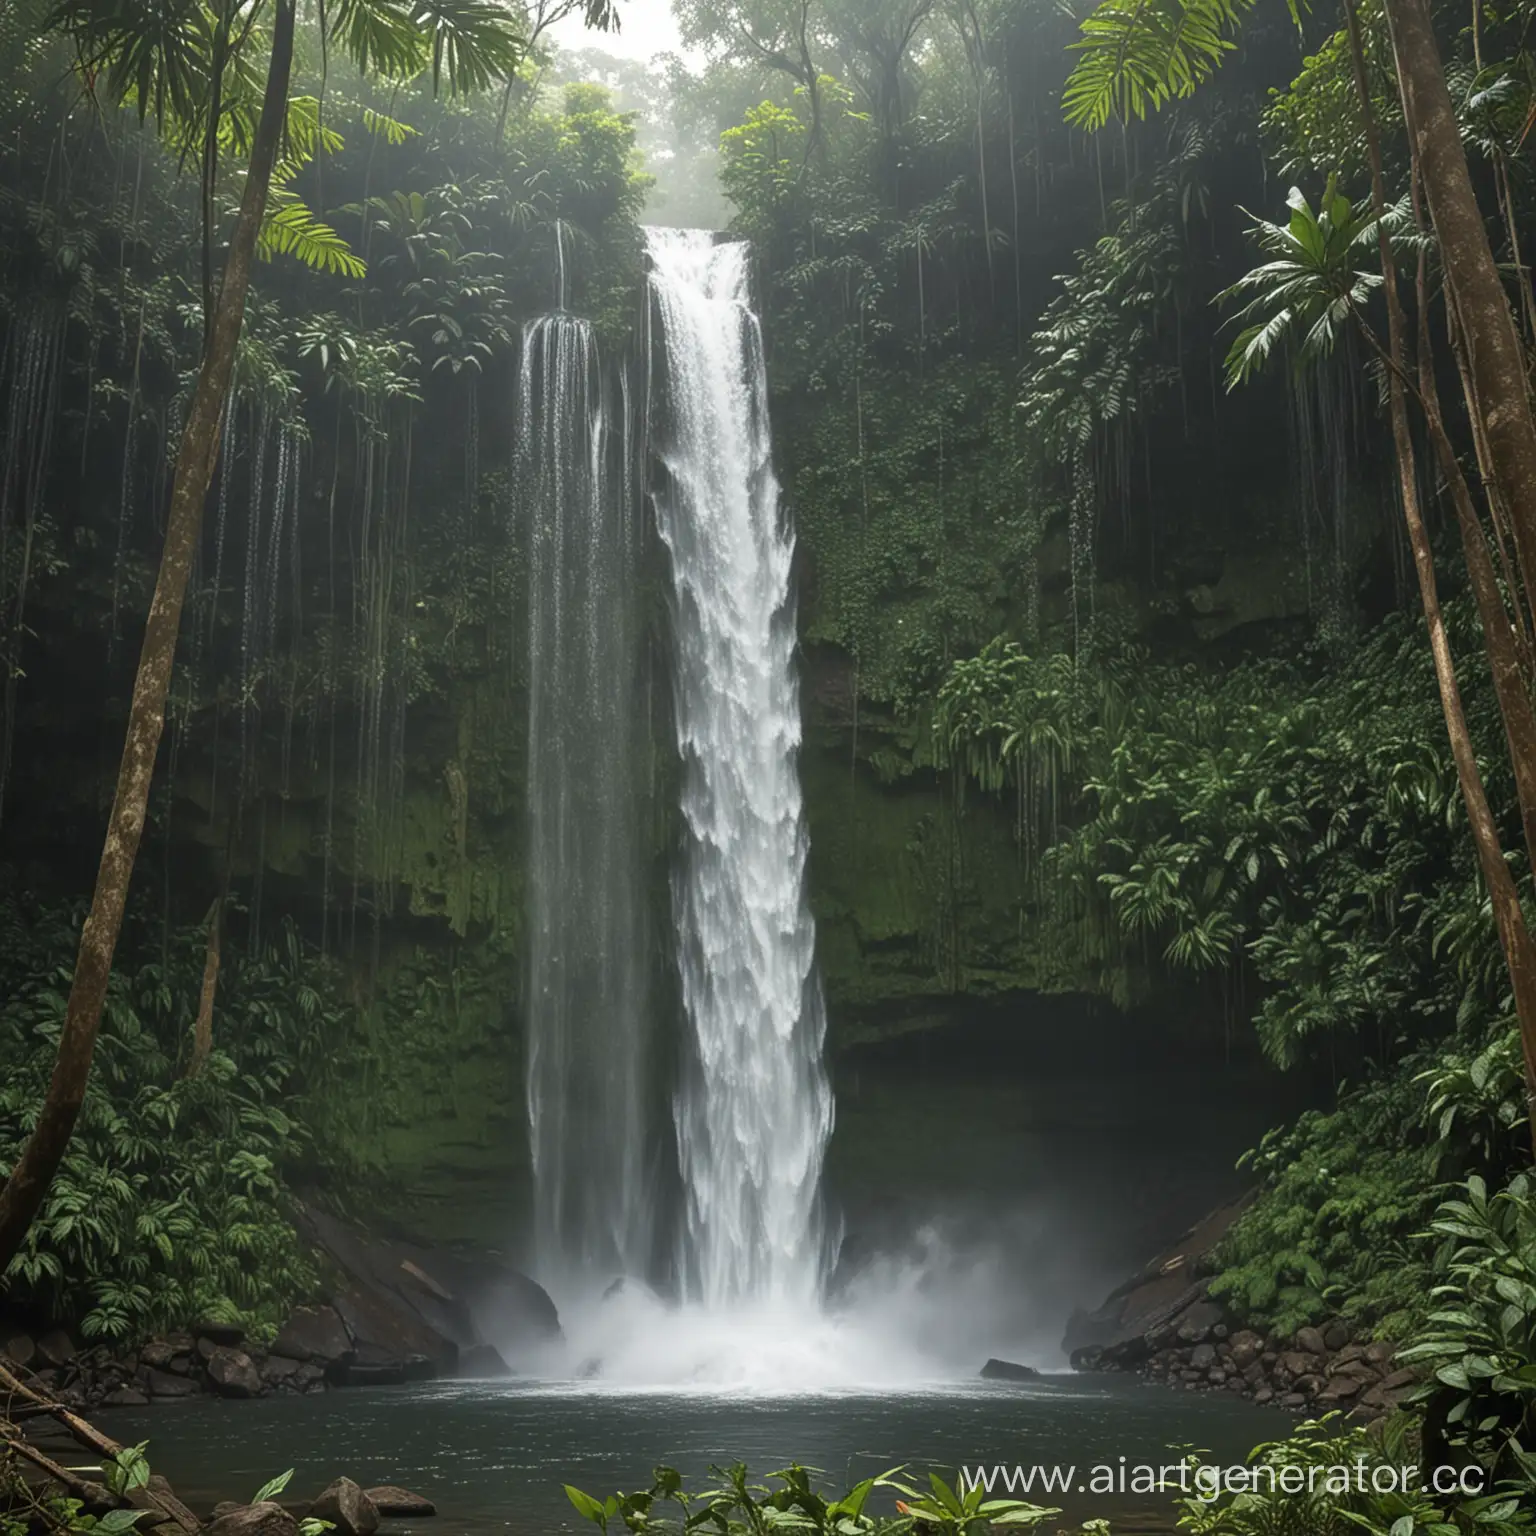 Водопад в тропическом лесу
В камеру летят брызги от него